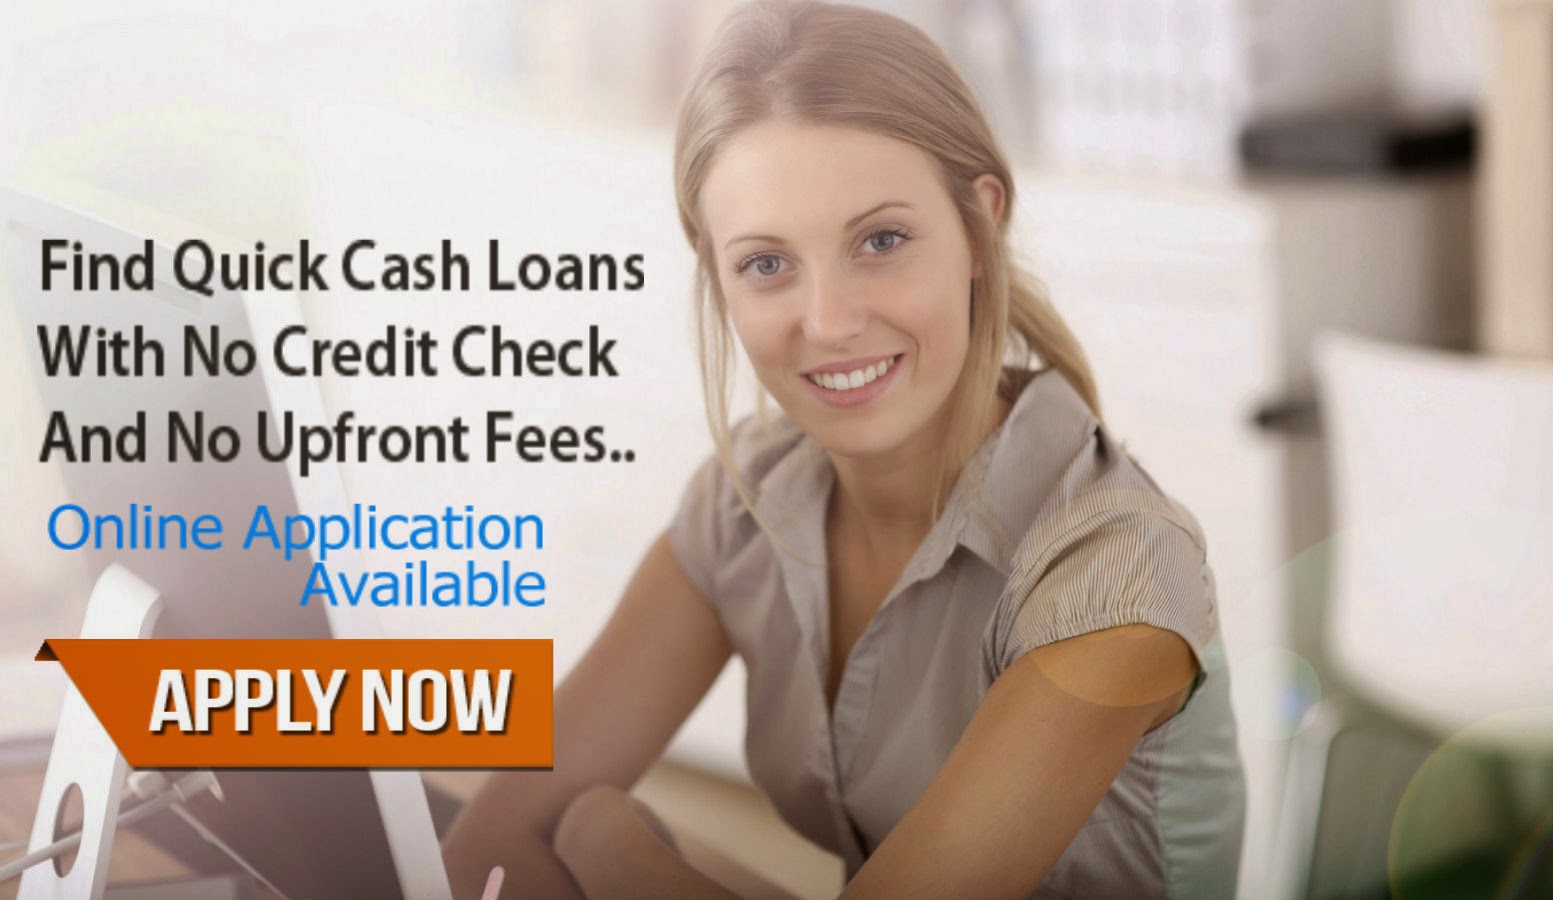 No credit check loan image